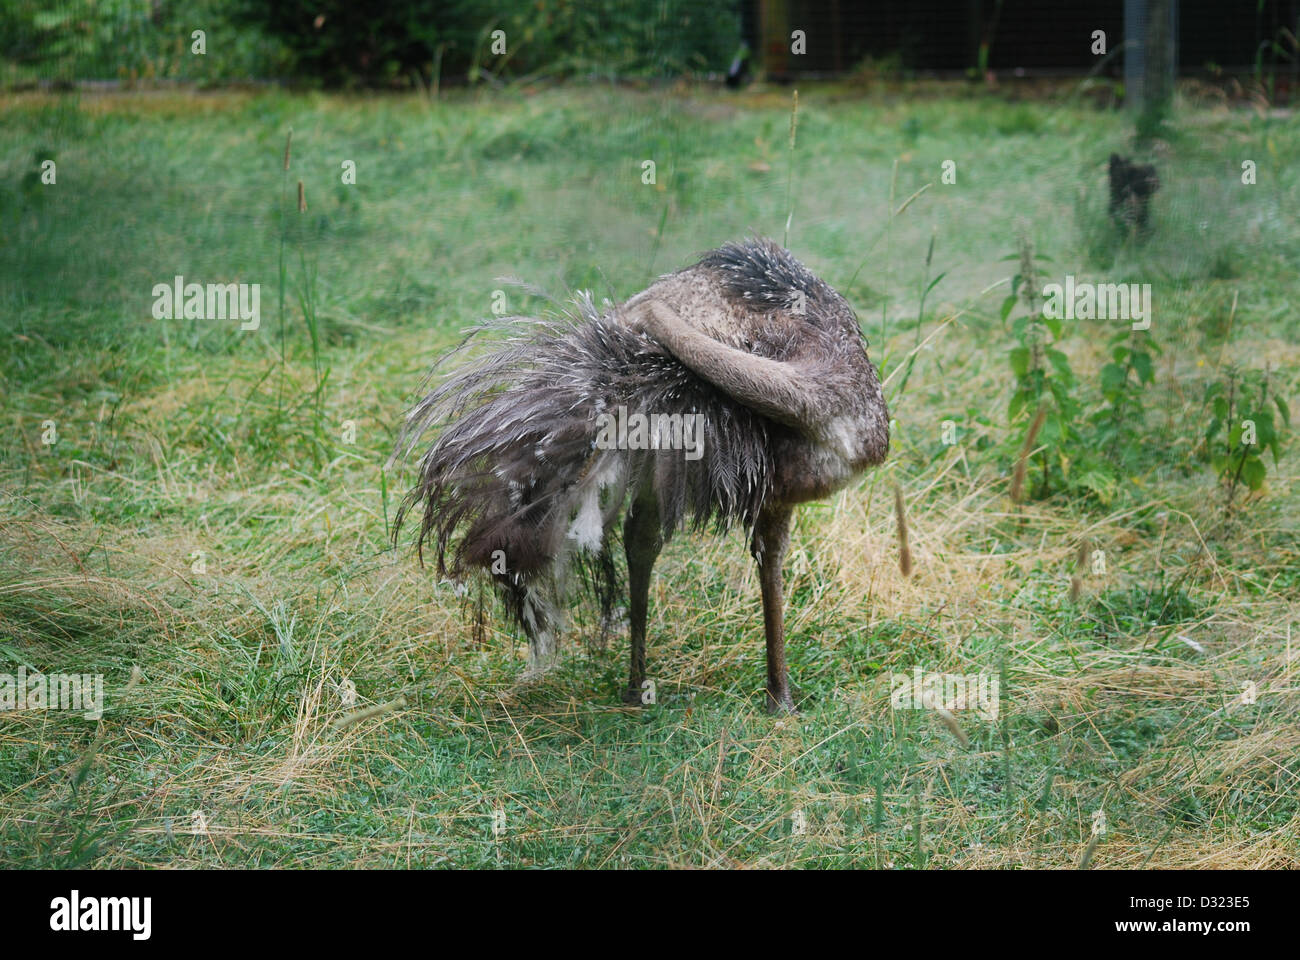 Un esotico Darwin bird governare le sue piume presso lo zoo di Edimburgo in un aperto erba verde campi di penna con grigio grigio piumaggio piume Foto Stock